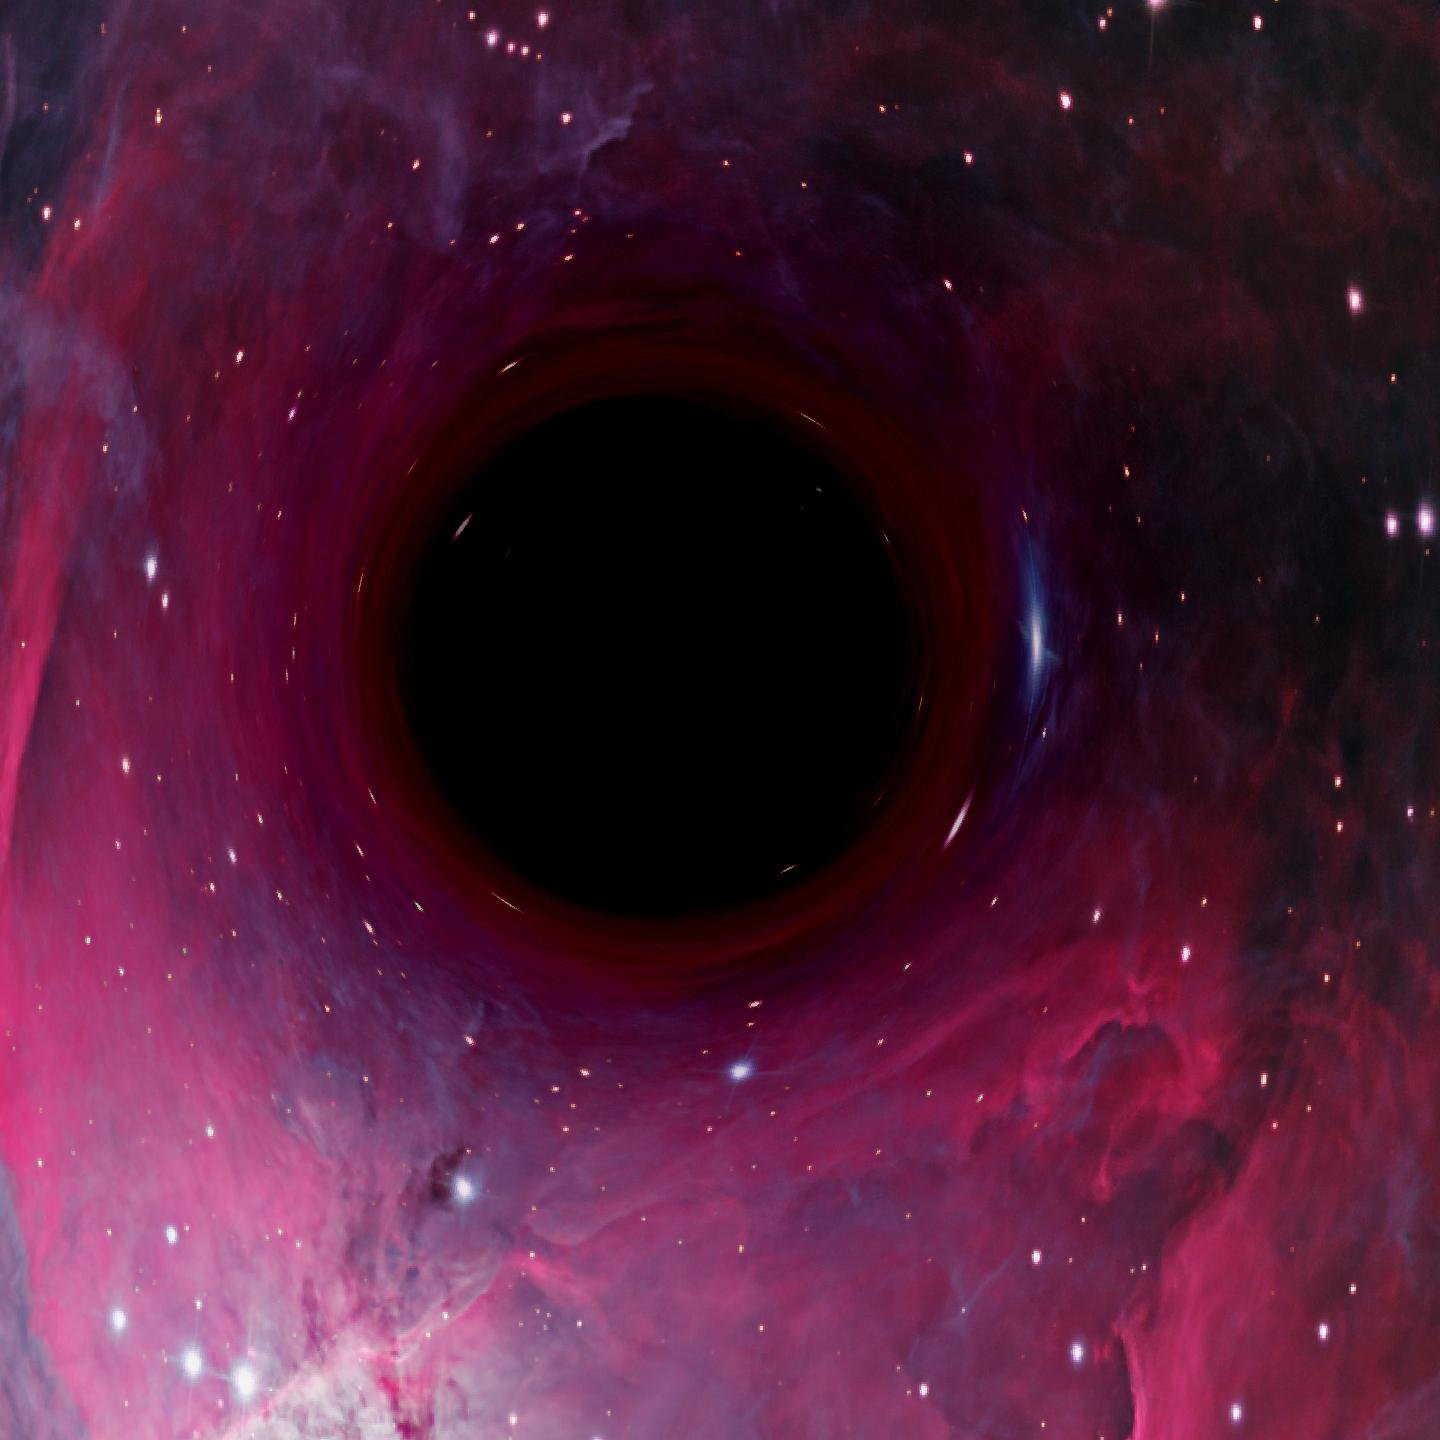 сделали фотографию черной дыры